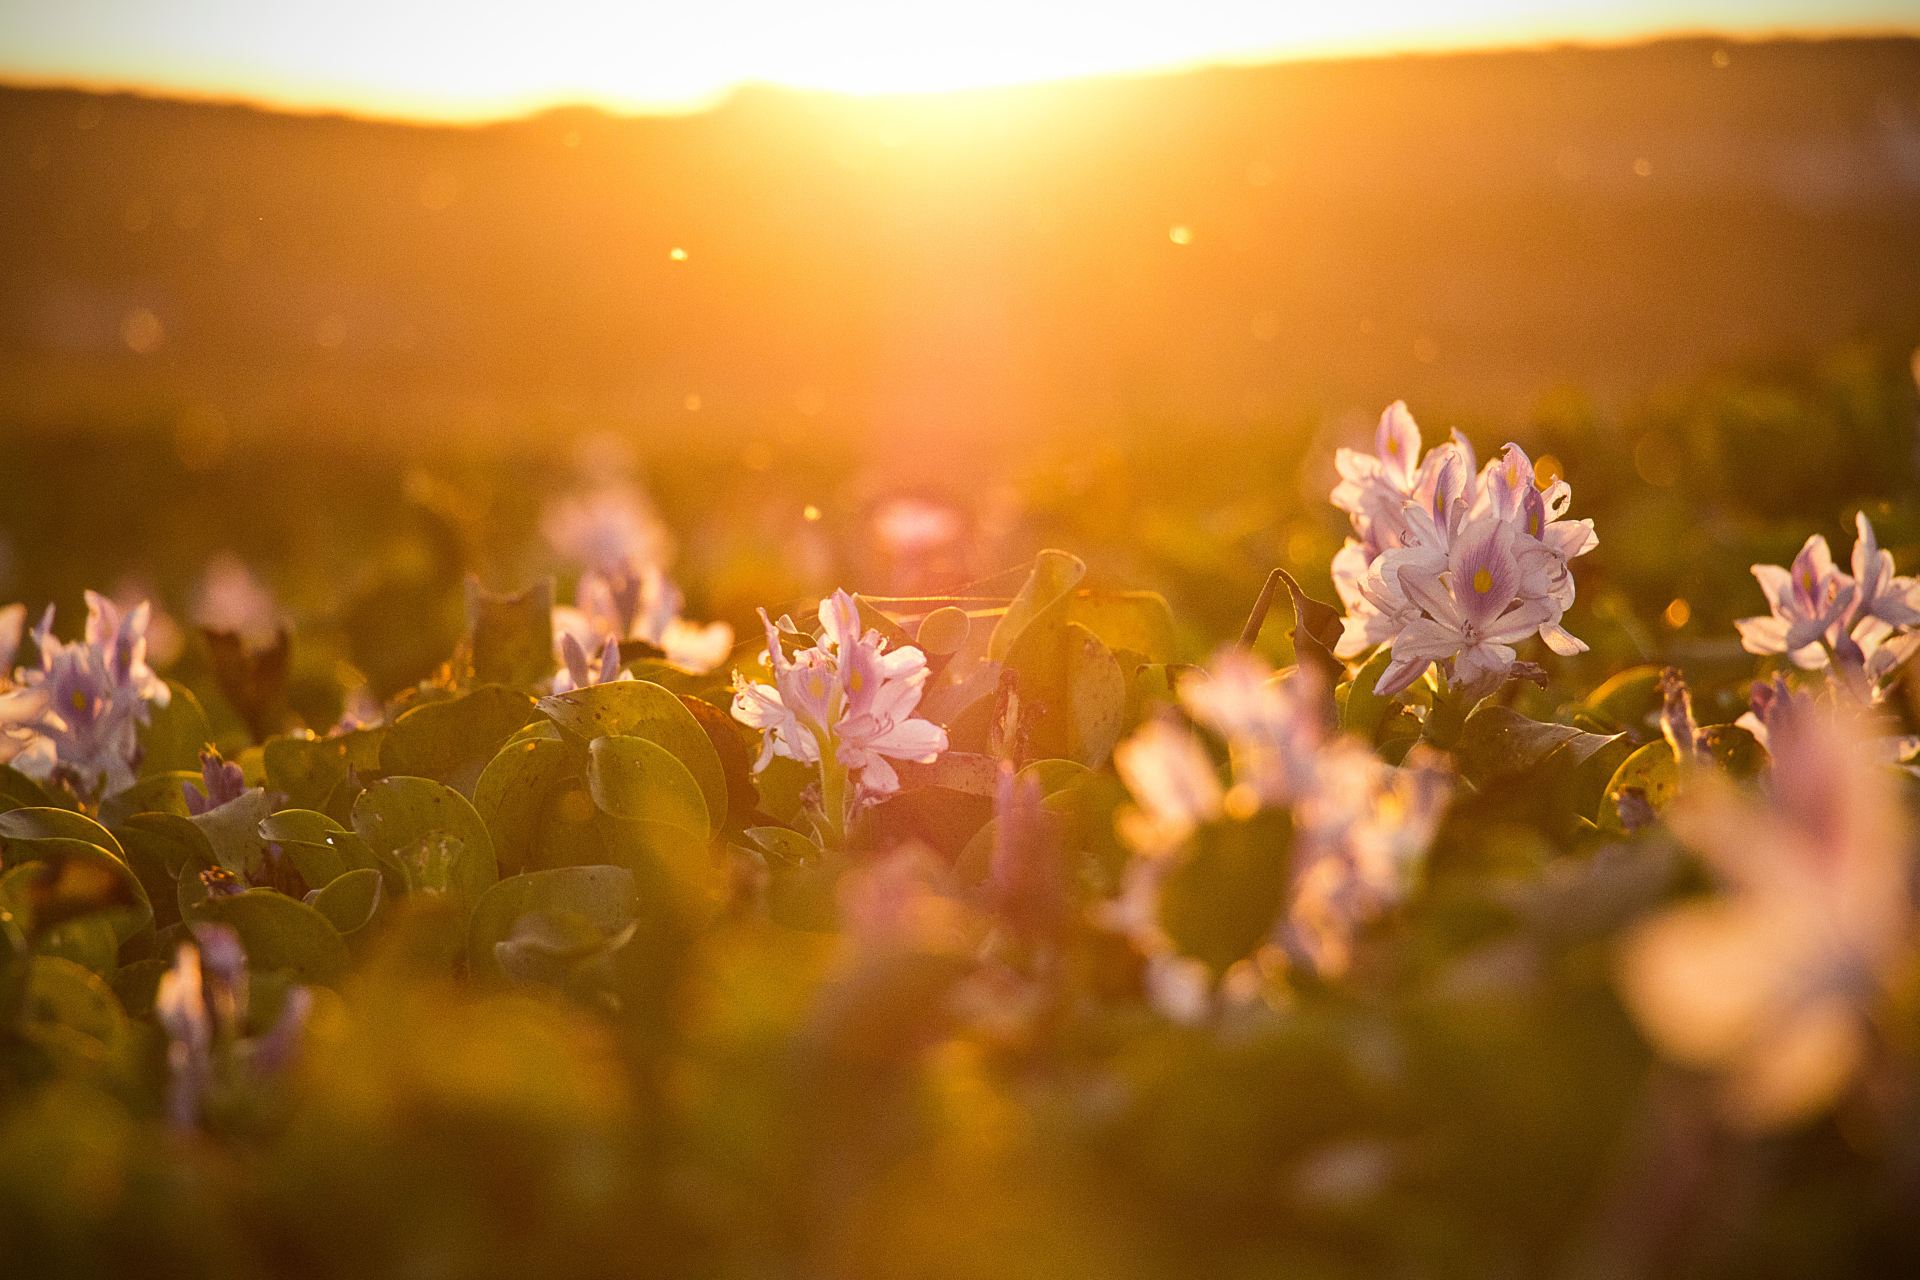 tilt shift lens photography of flower field during sunset